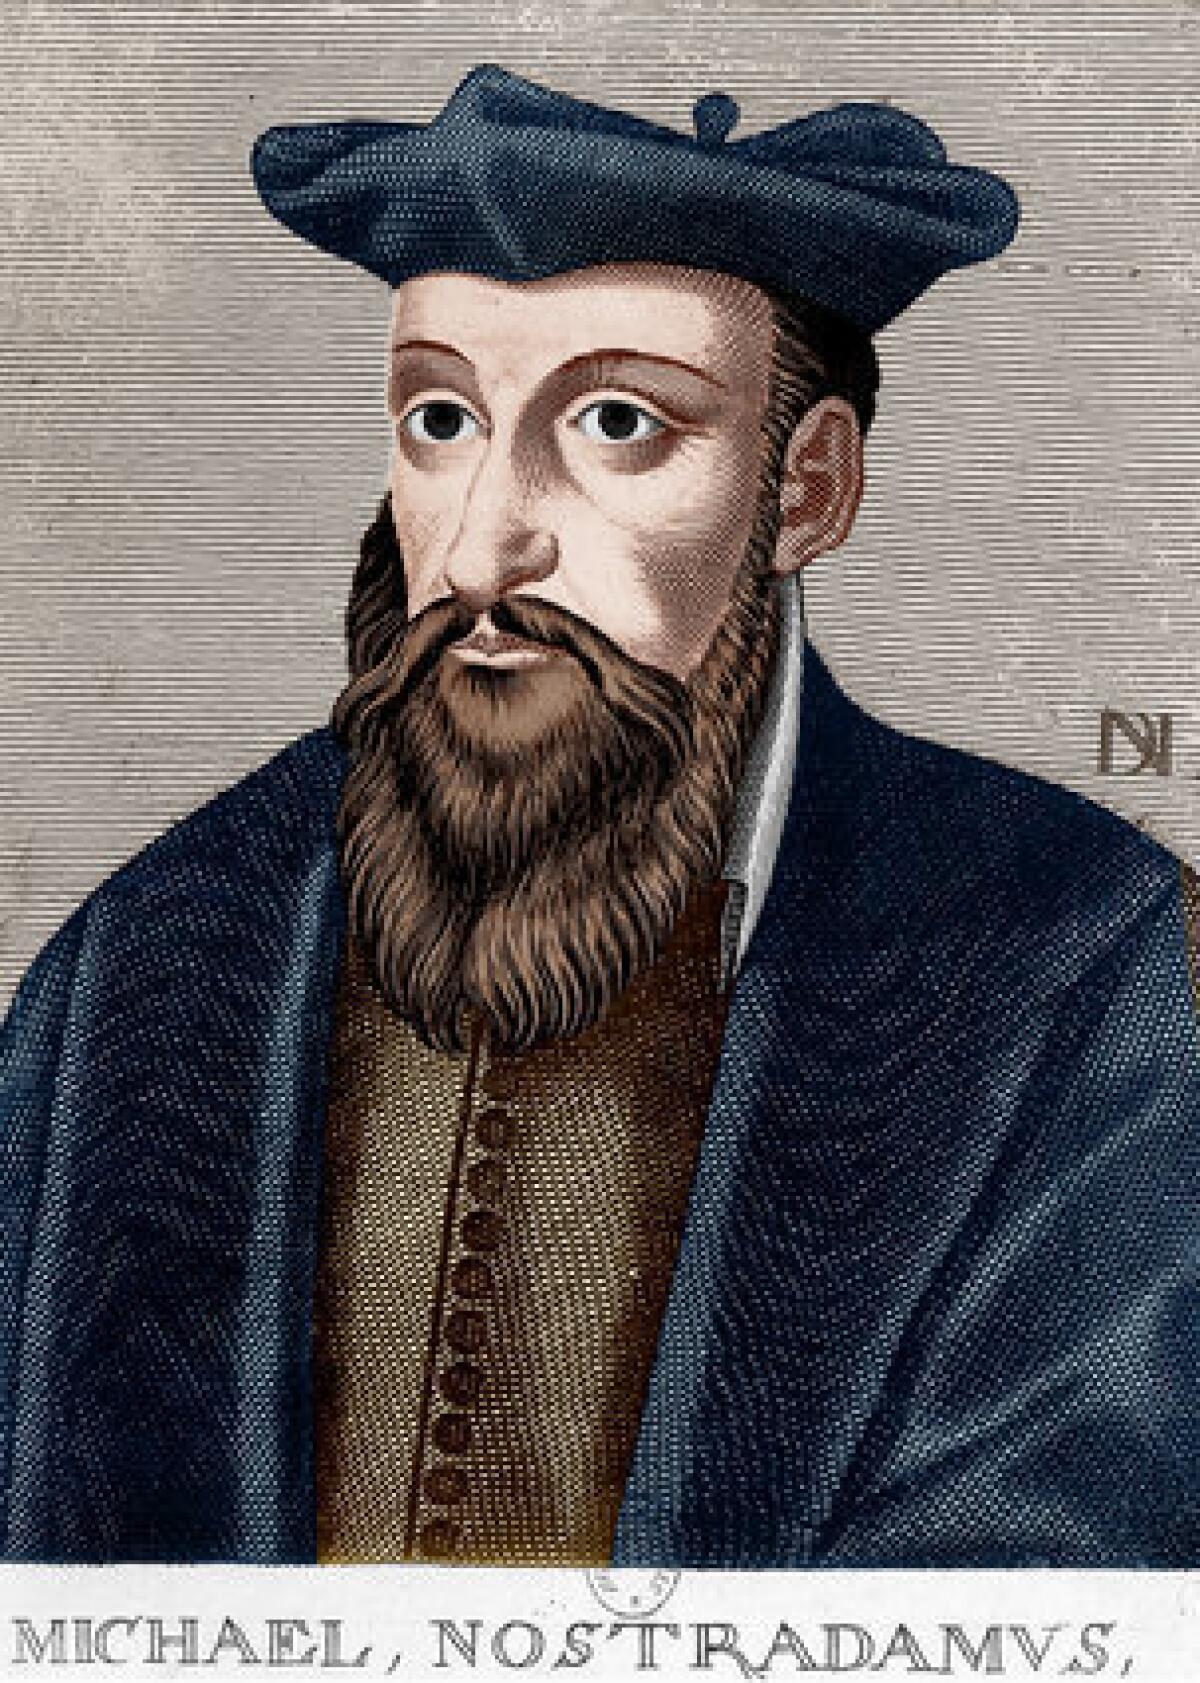 An engraving of Michel de Nostredame, known as Nostradamus.